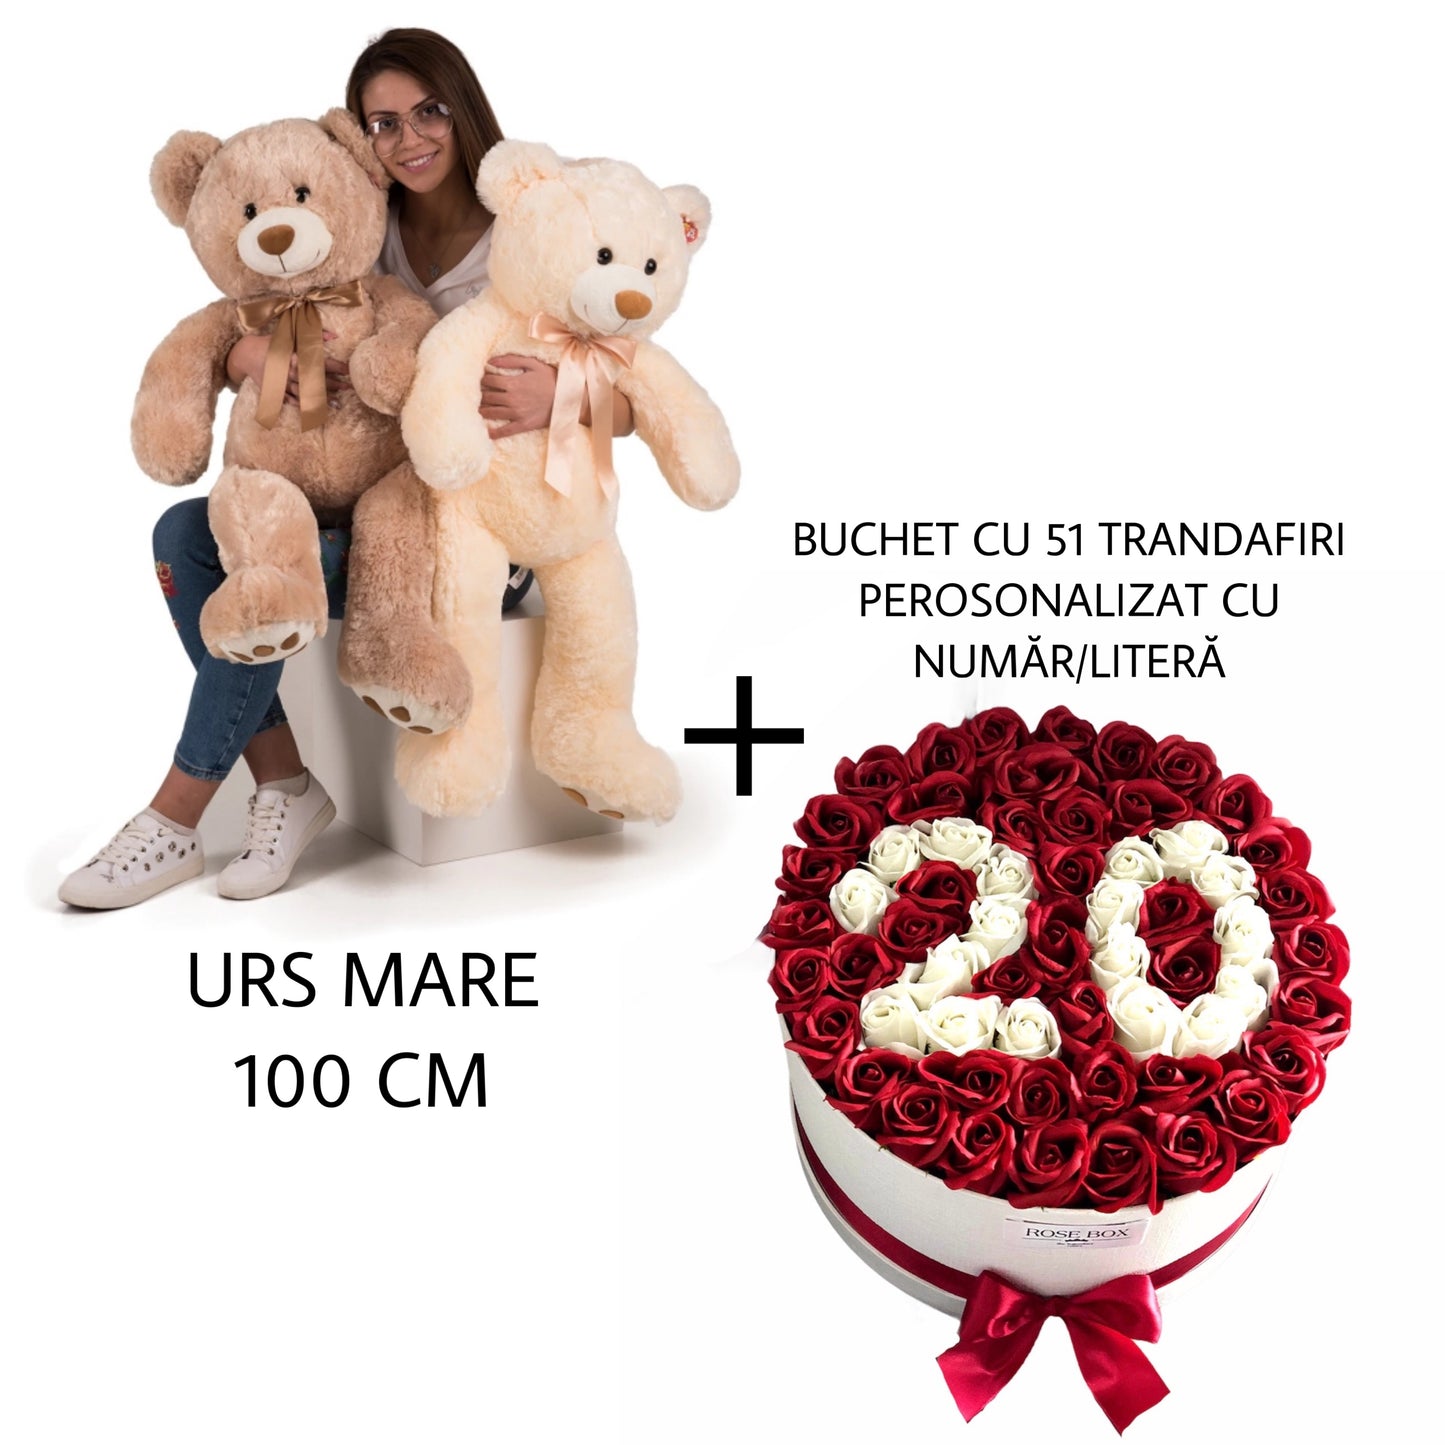 Urs mare pluș 100cm + Cutie cu 51 trandafiri personalizată cu număr/literă